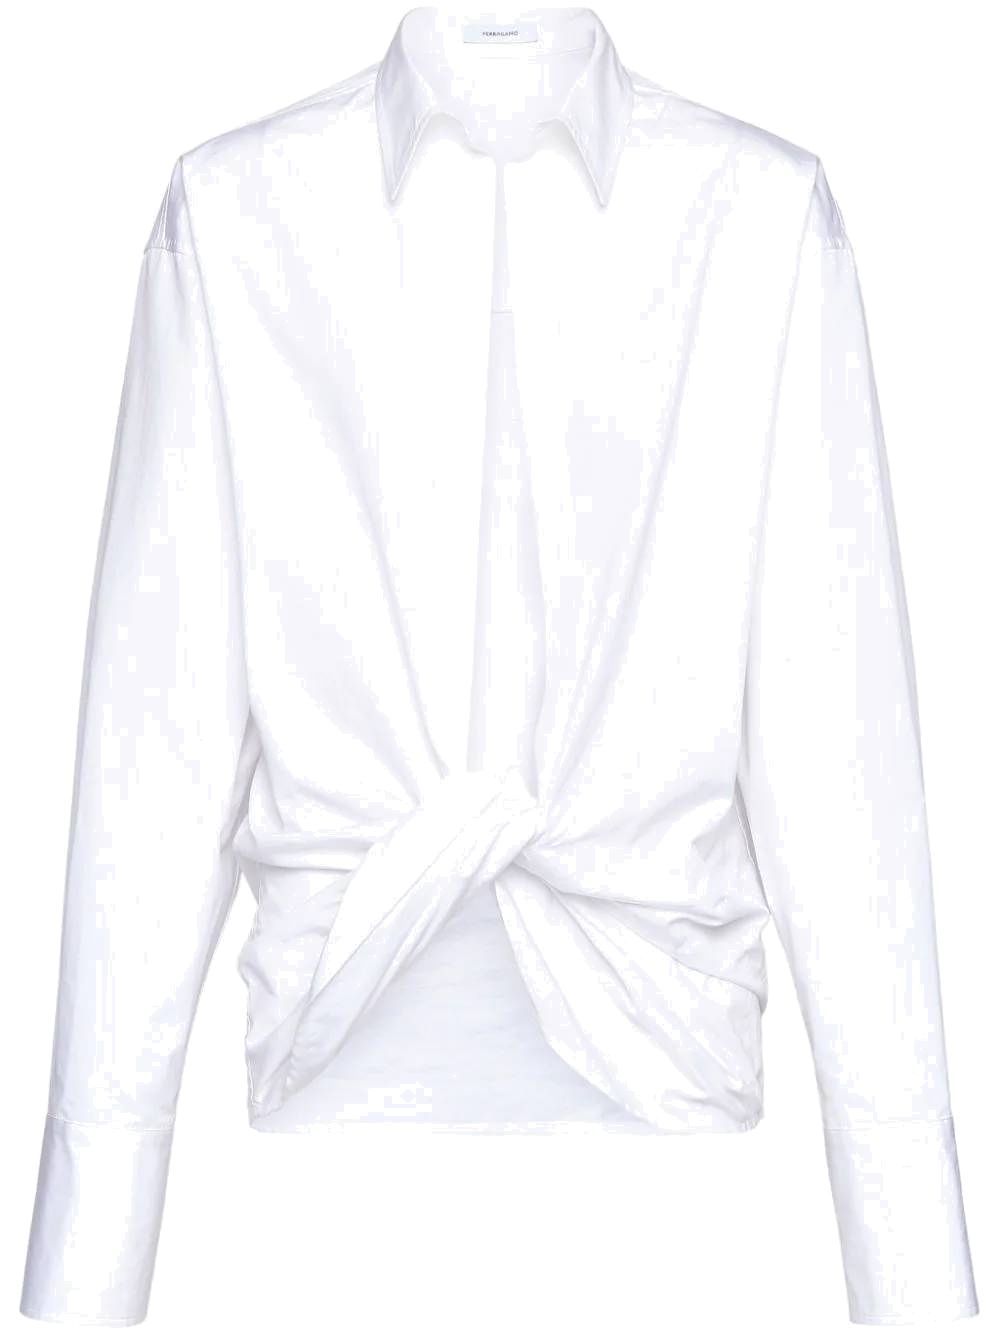 Camicia bianca